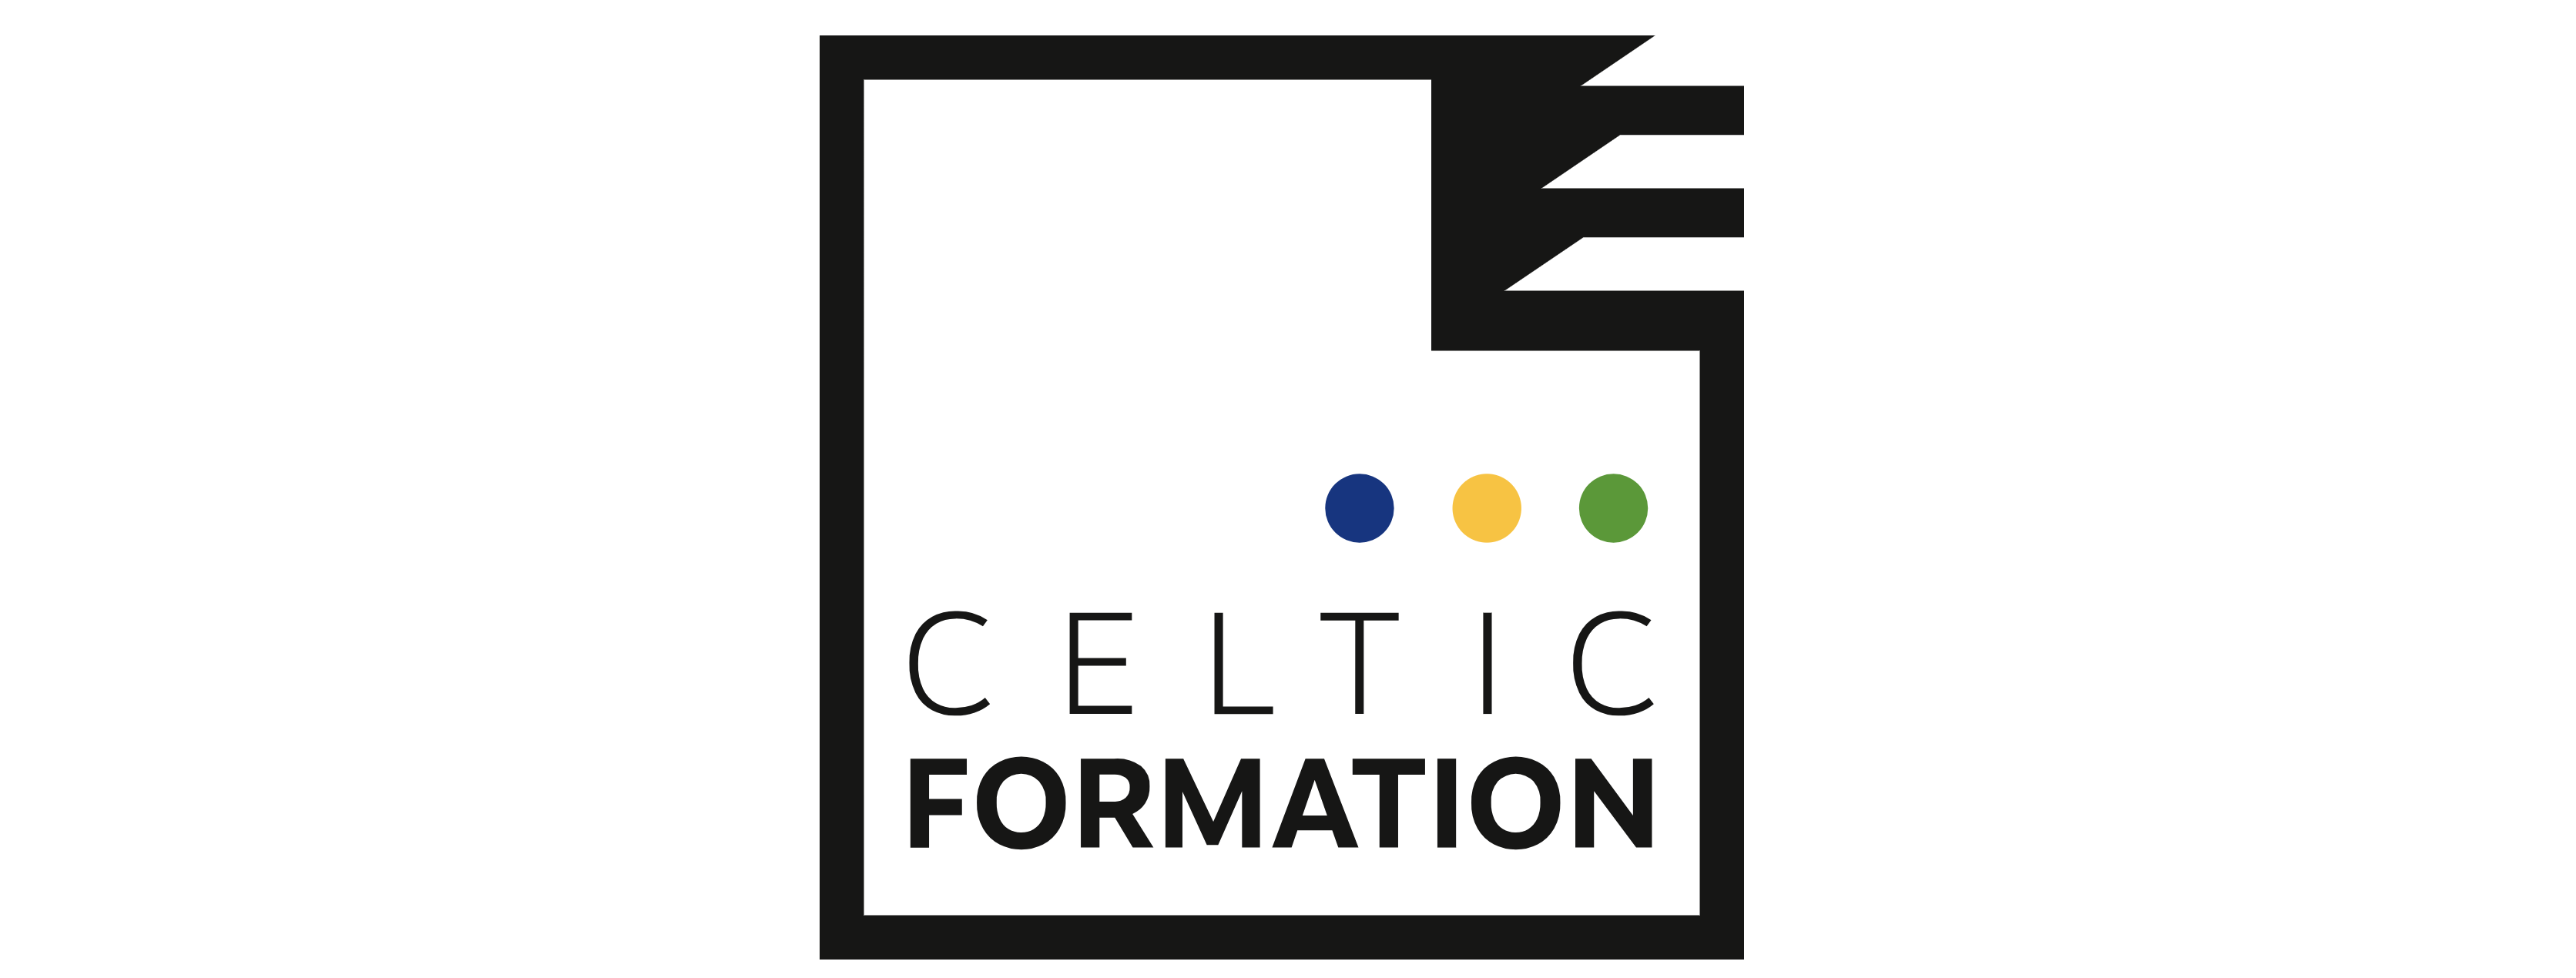 Le Groupe Saturne - Logo - Celtic Formation - Un univers de propreté - Nettoyage professionnel - Entreprise de nettoyage